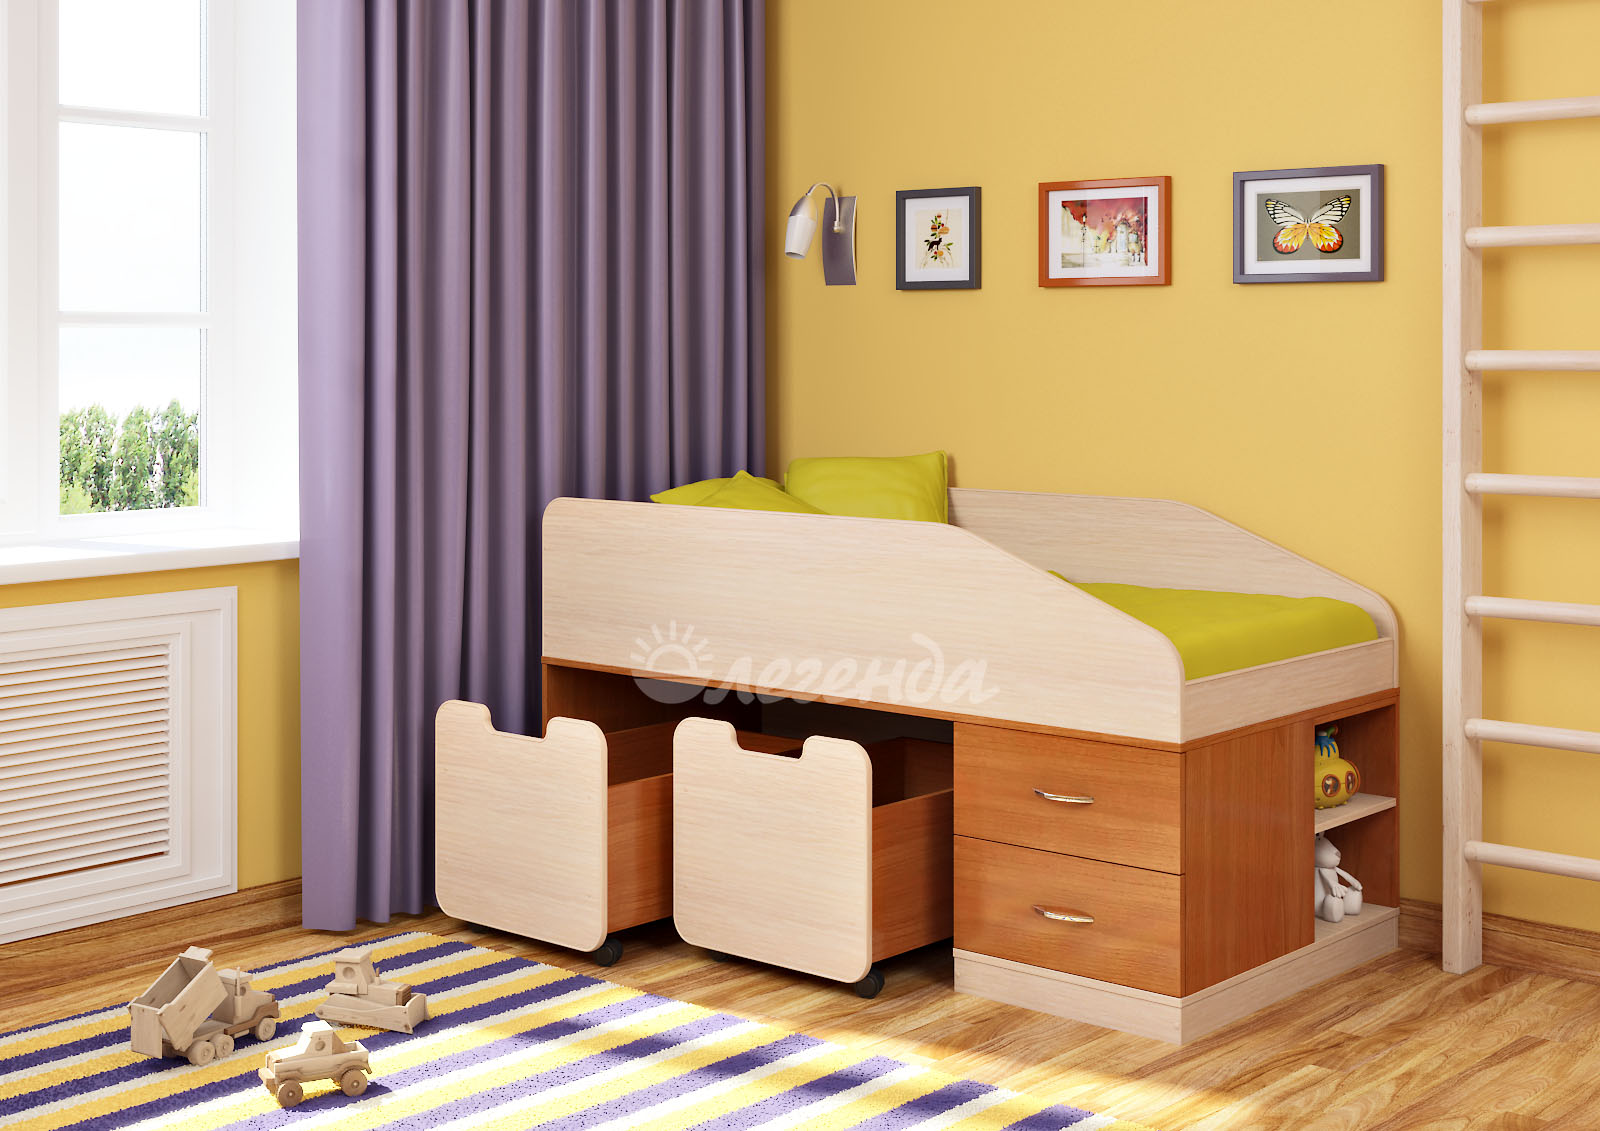 Детская кровать от 3 лет Легенда 8 — купить за 16373.00 руб. в Москве поцене производителя!